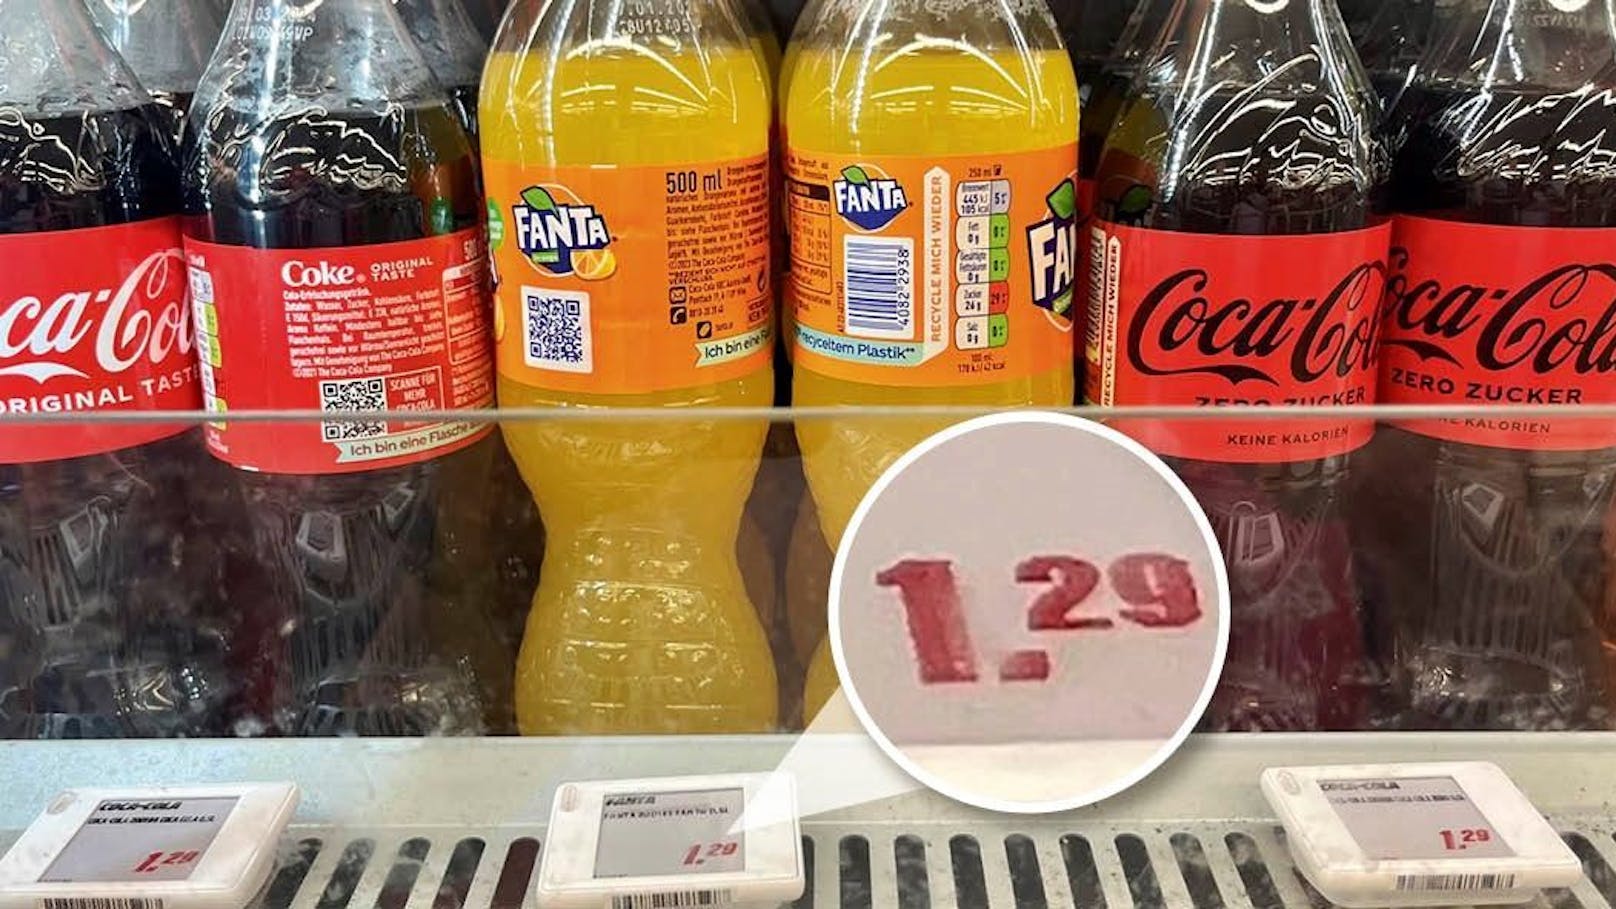 Unglaublich – Cola ist hier günstiger als im Supermarkt